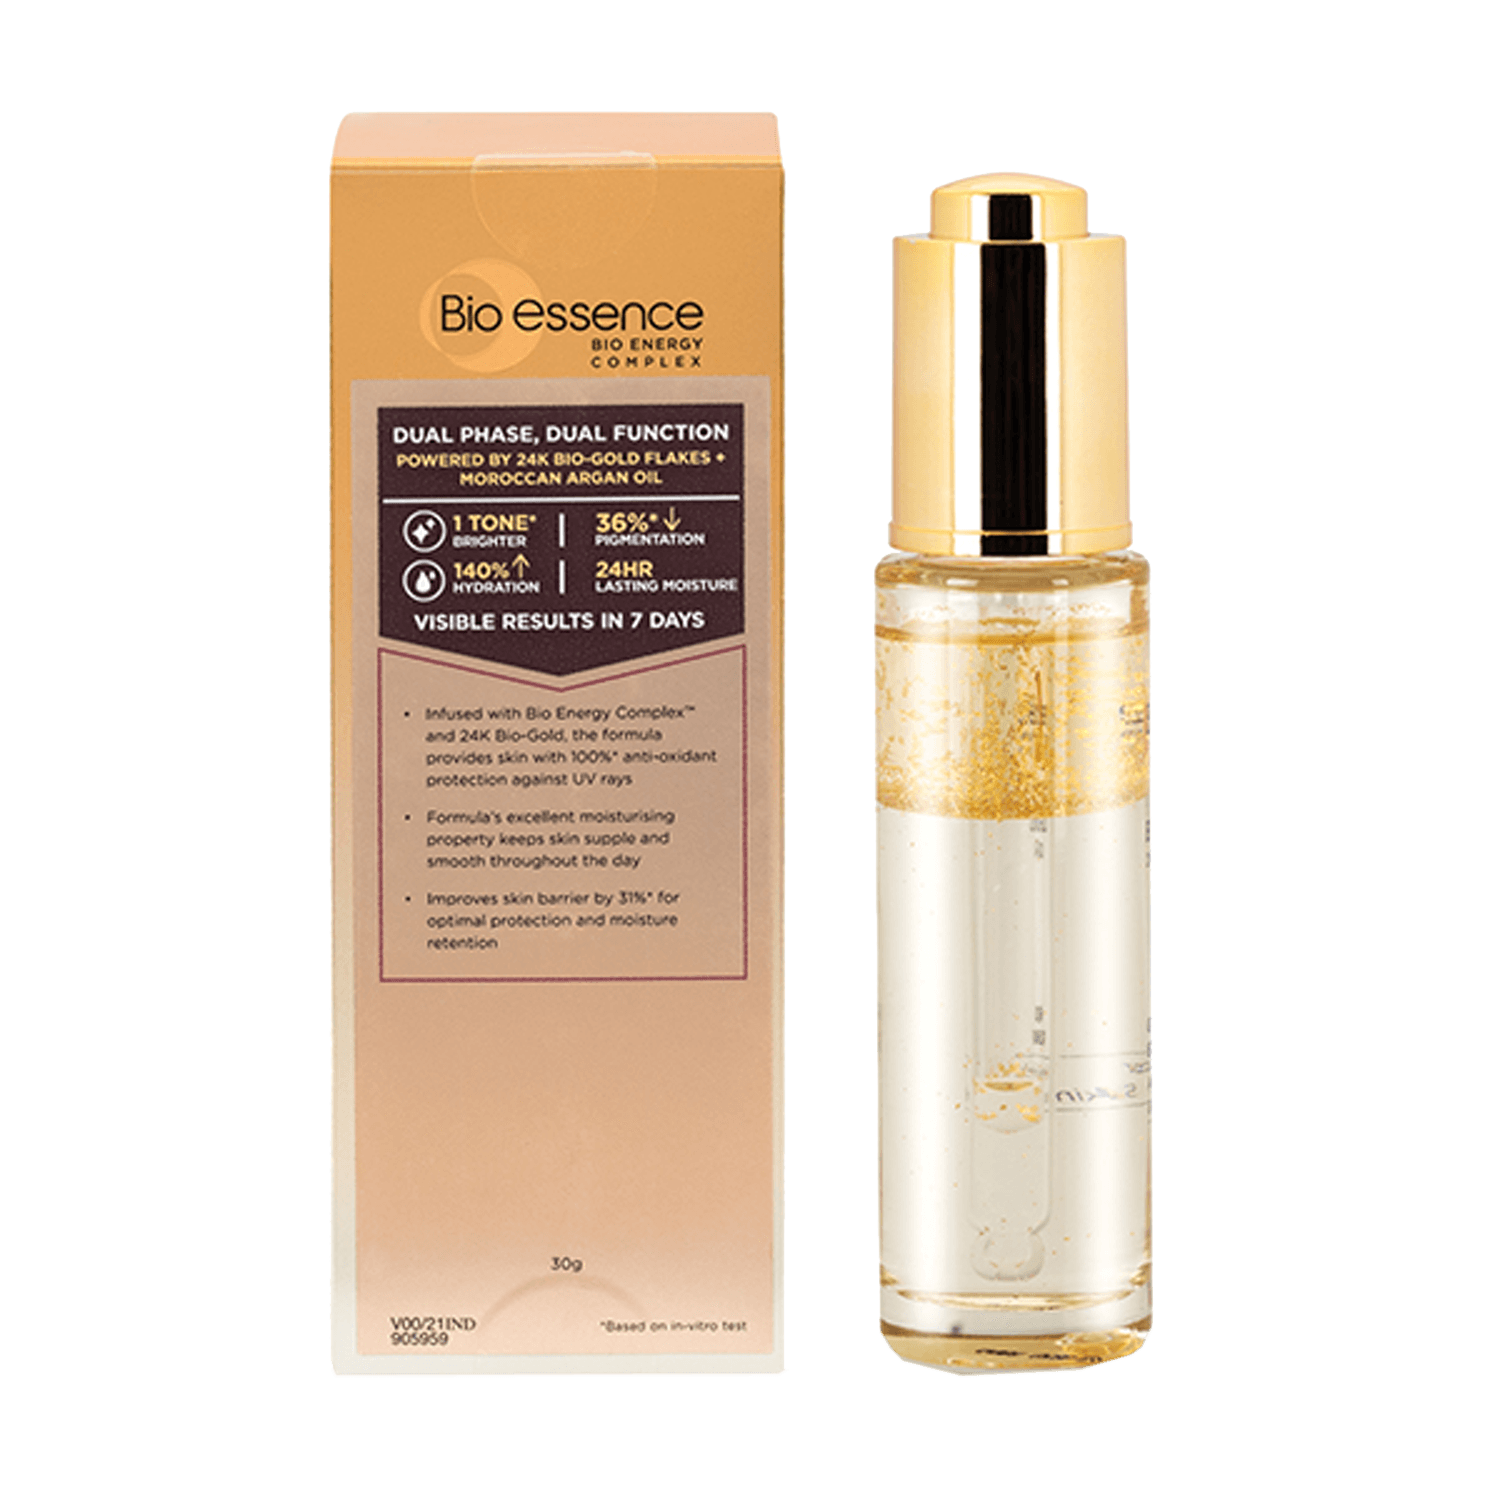 Bio Essence Bio-Gold Golden Skin Elixir Serum with 24K Gold (30g)